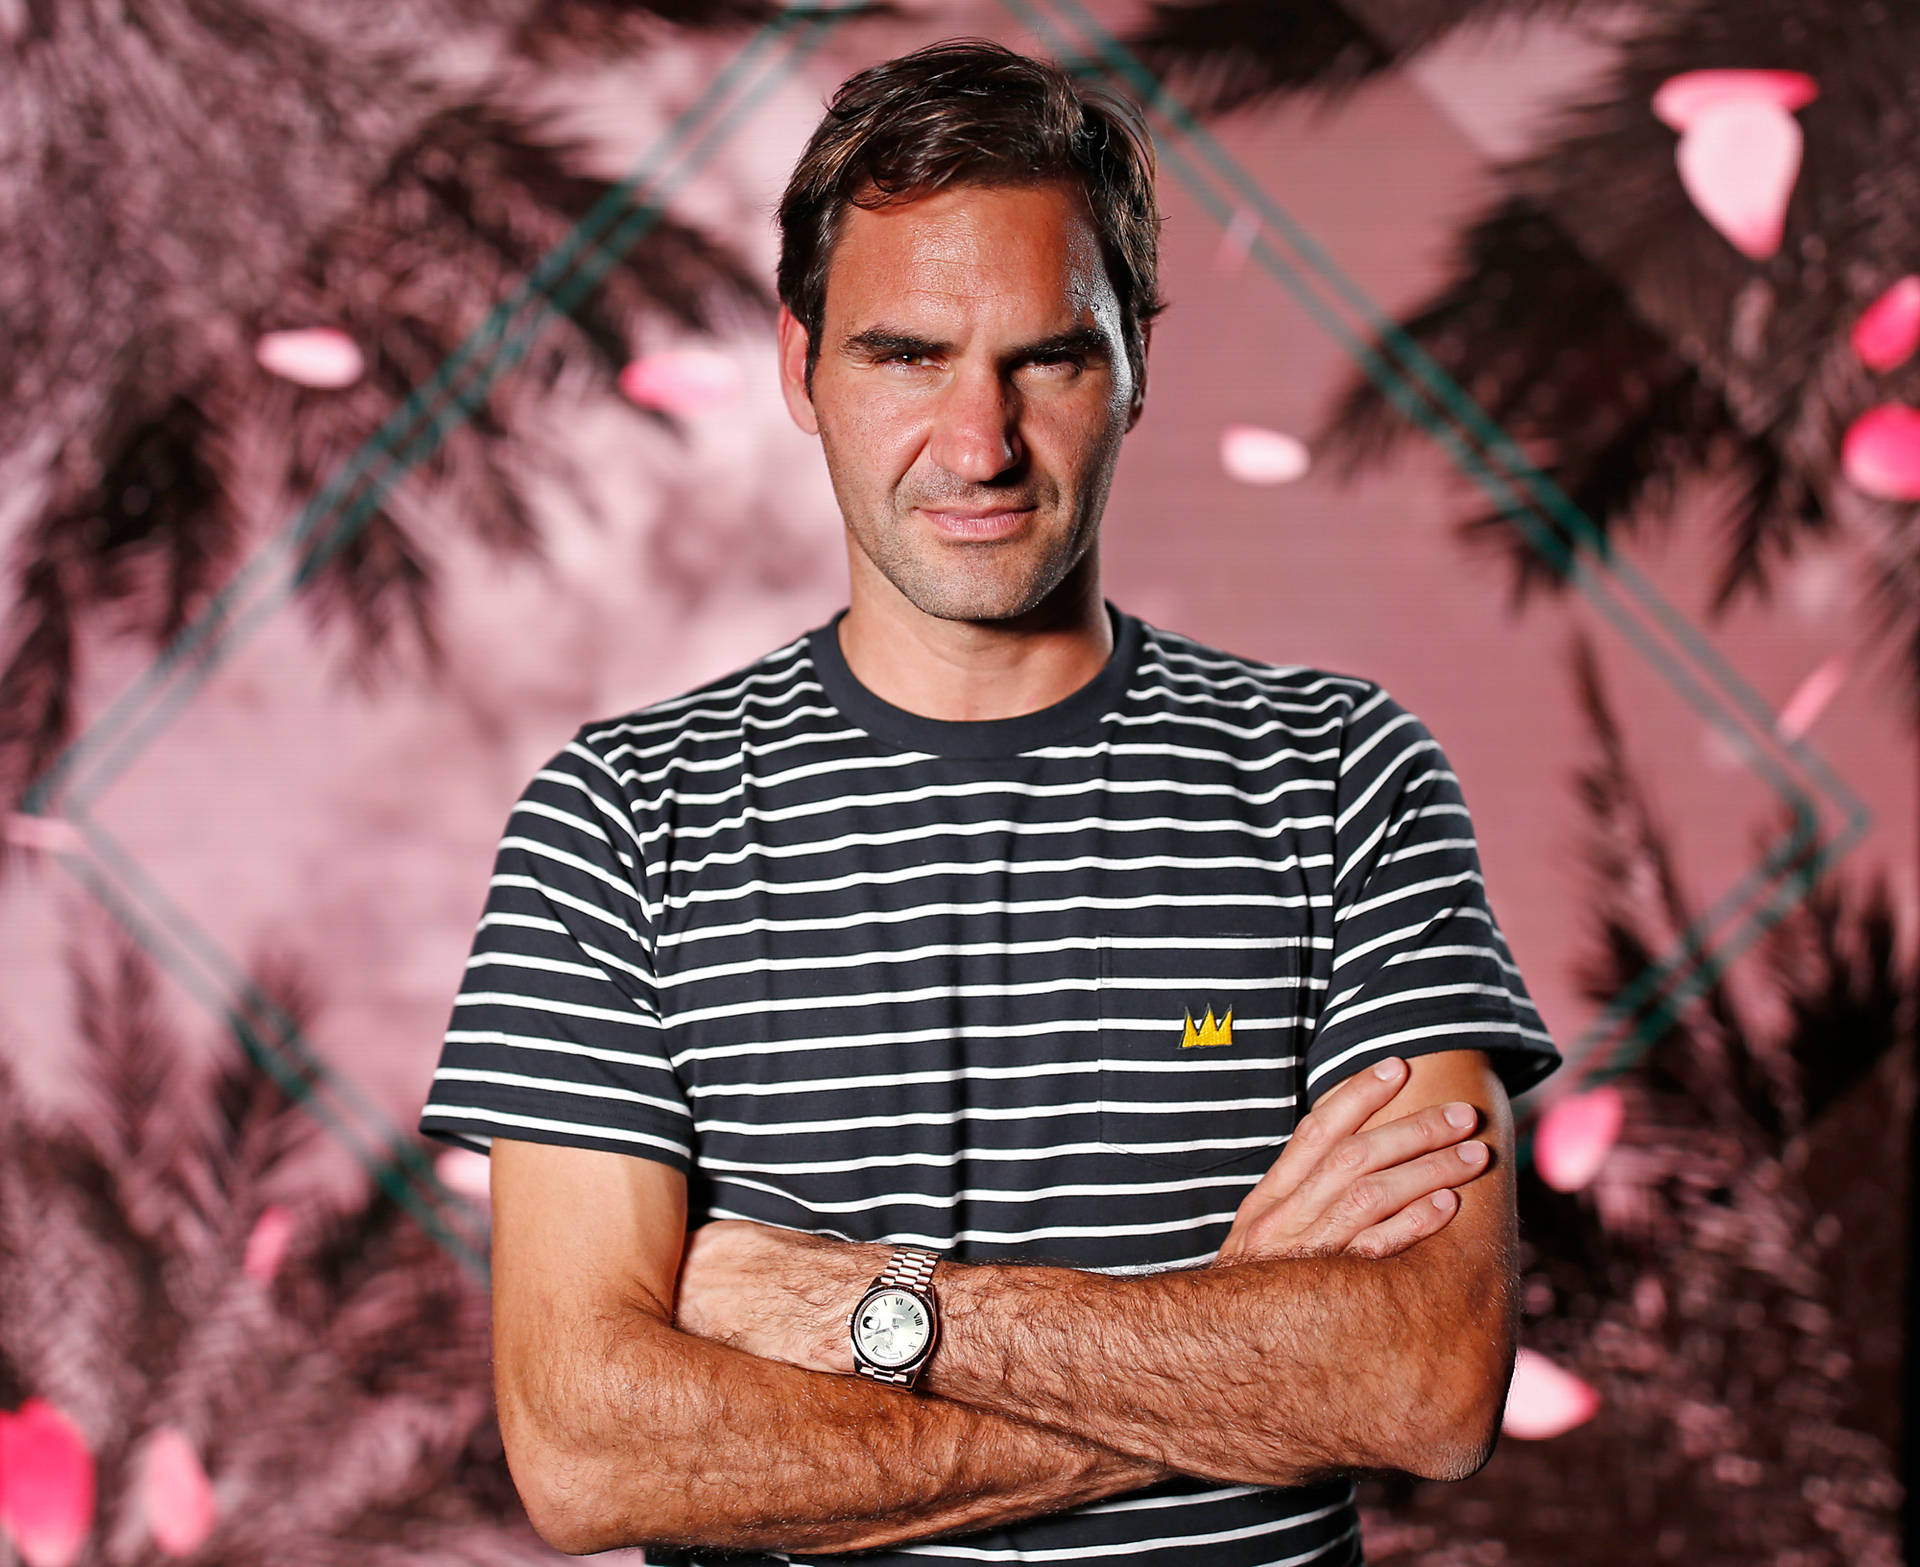 Roger Federer Summer Photoshoot